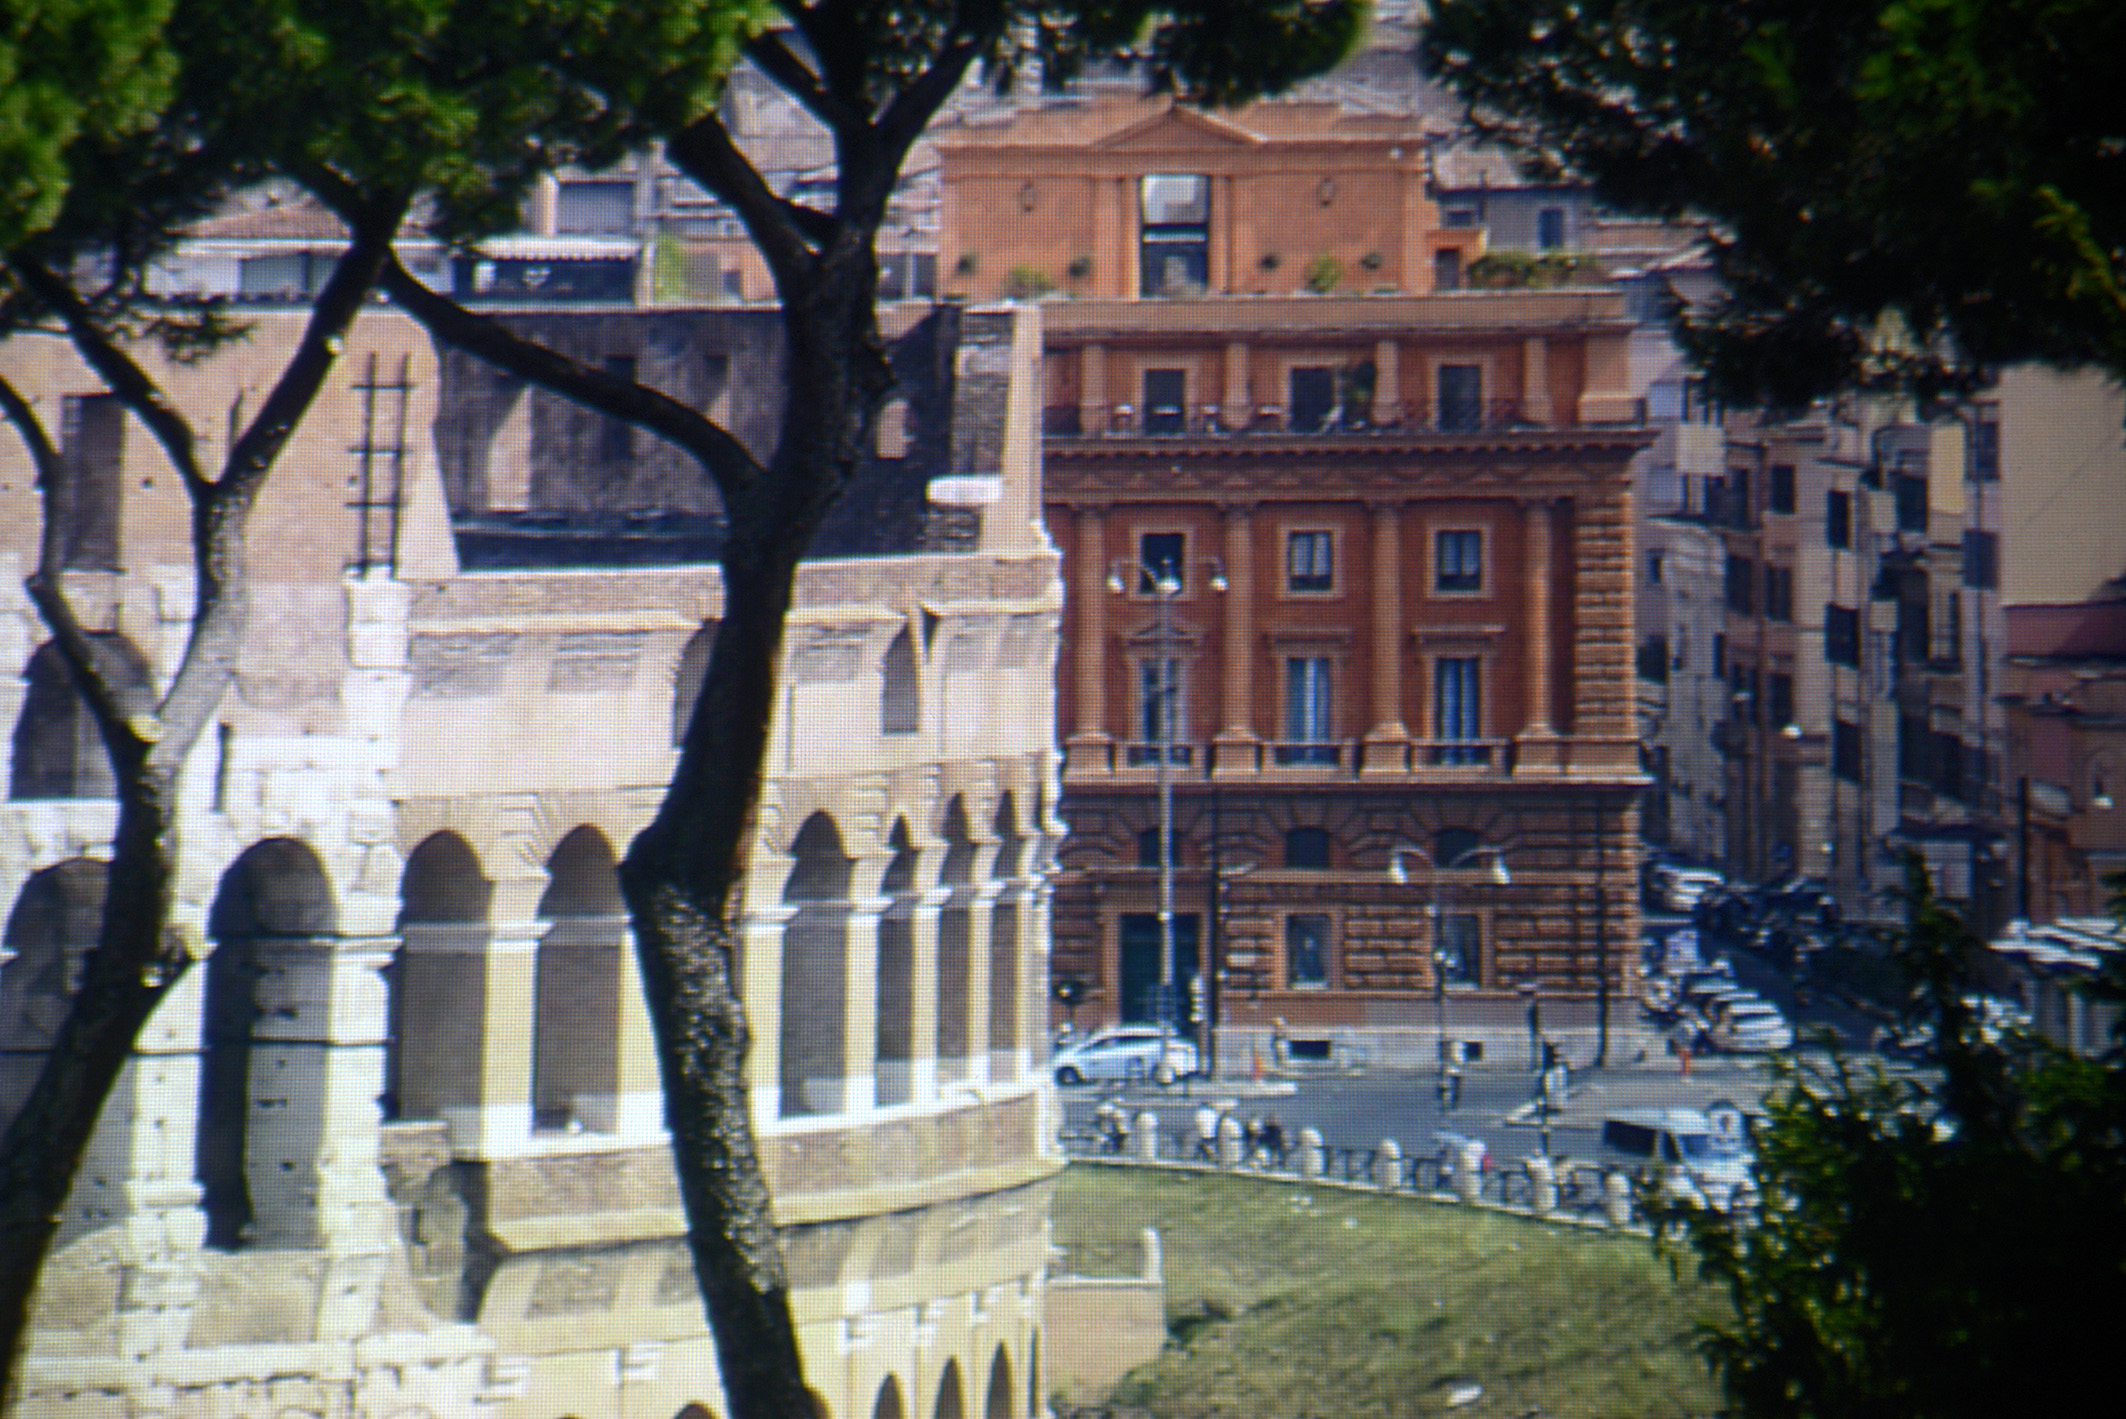 Foto: Michael B. Rehders - Dieser Screenshot zeigt einen kleinen Ausschnitt aus einem 4K-Bildwerk aus Rom. Neben dem Kolosseum steht ein gemauertes Haus in verschiedenen rot/braunen Farbtönen. Die Straßenlaternen davor sind vollständig zu sehen. Selbst der Zaun wird detailreich reproduziert, der das Kolosseum von der Straße abgrenzt. 